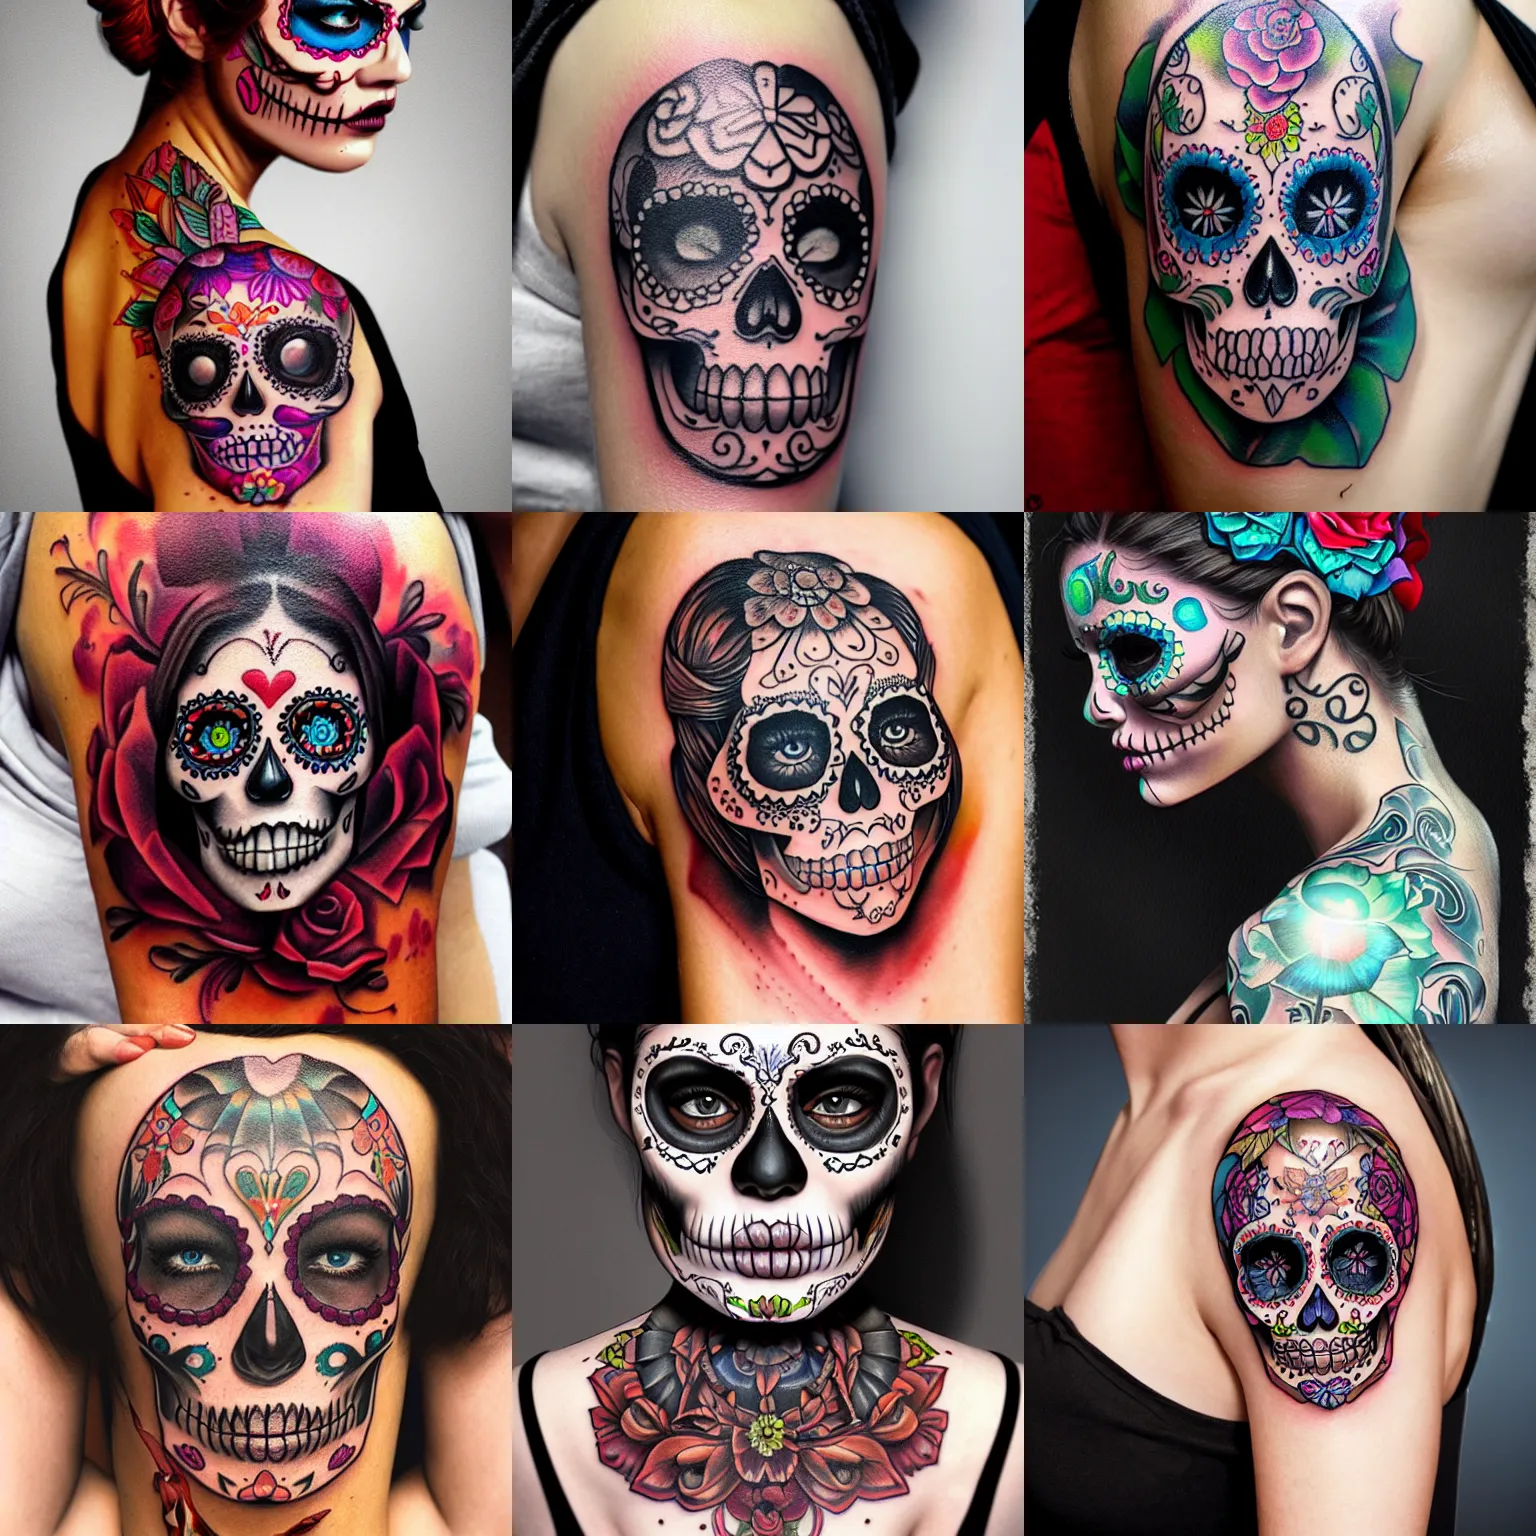 T-Rex Skull Tattoo - Best Tattoo Ideas Gallery